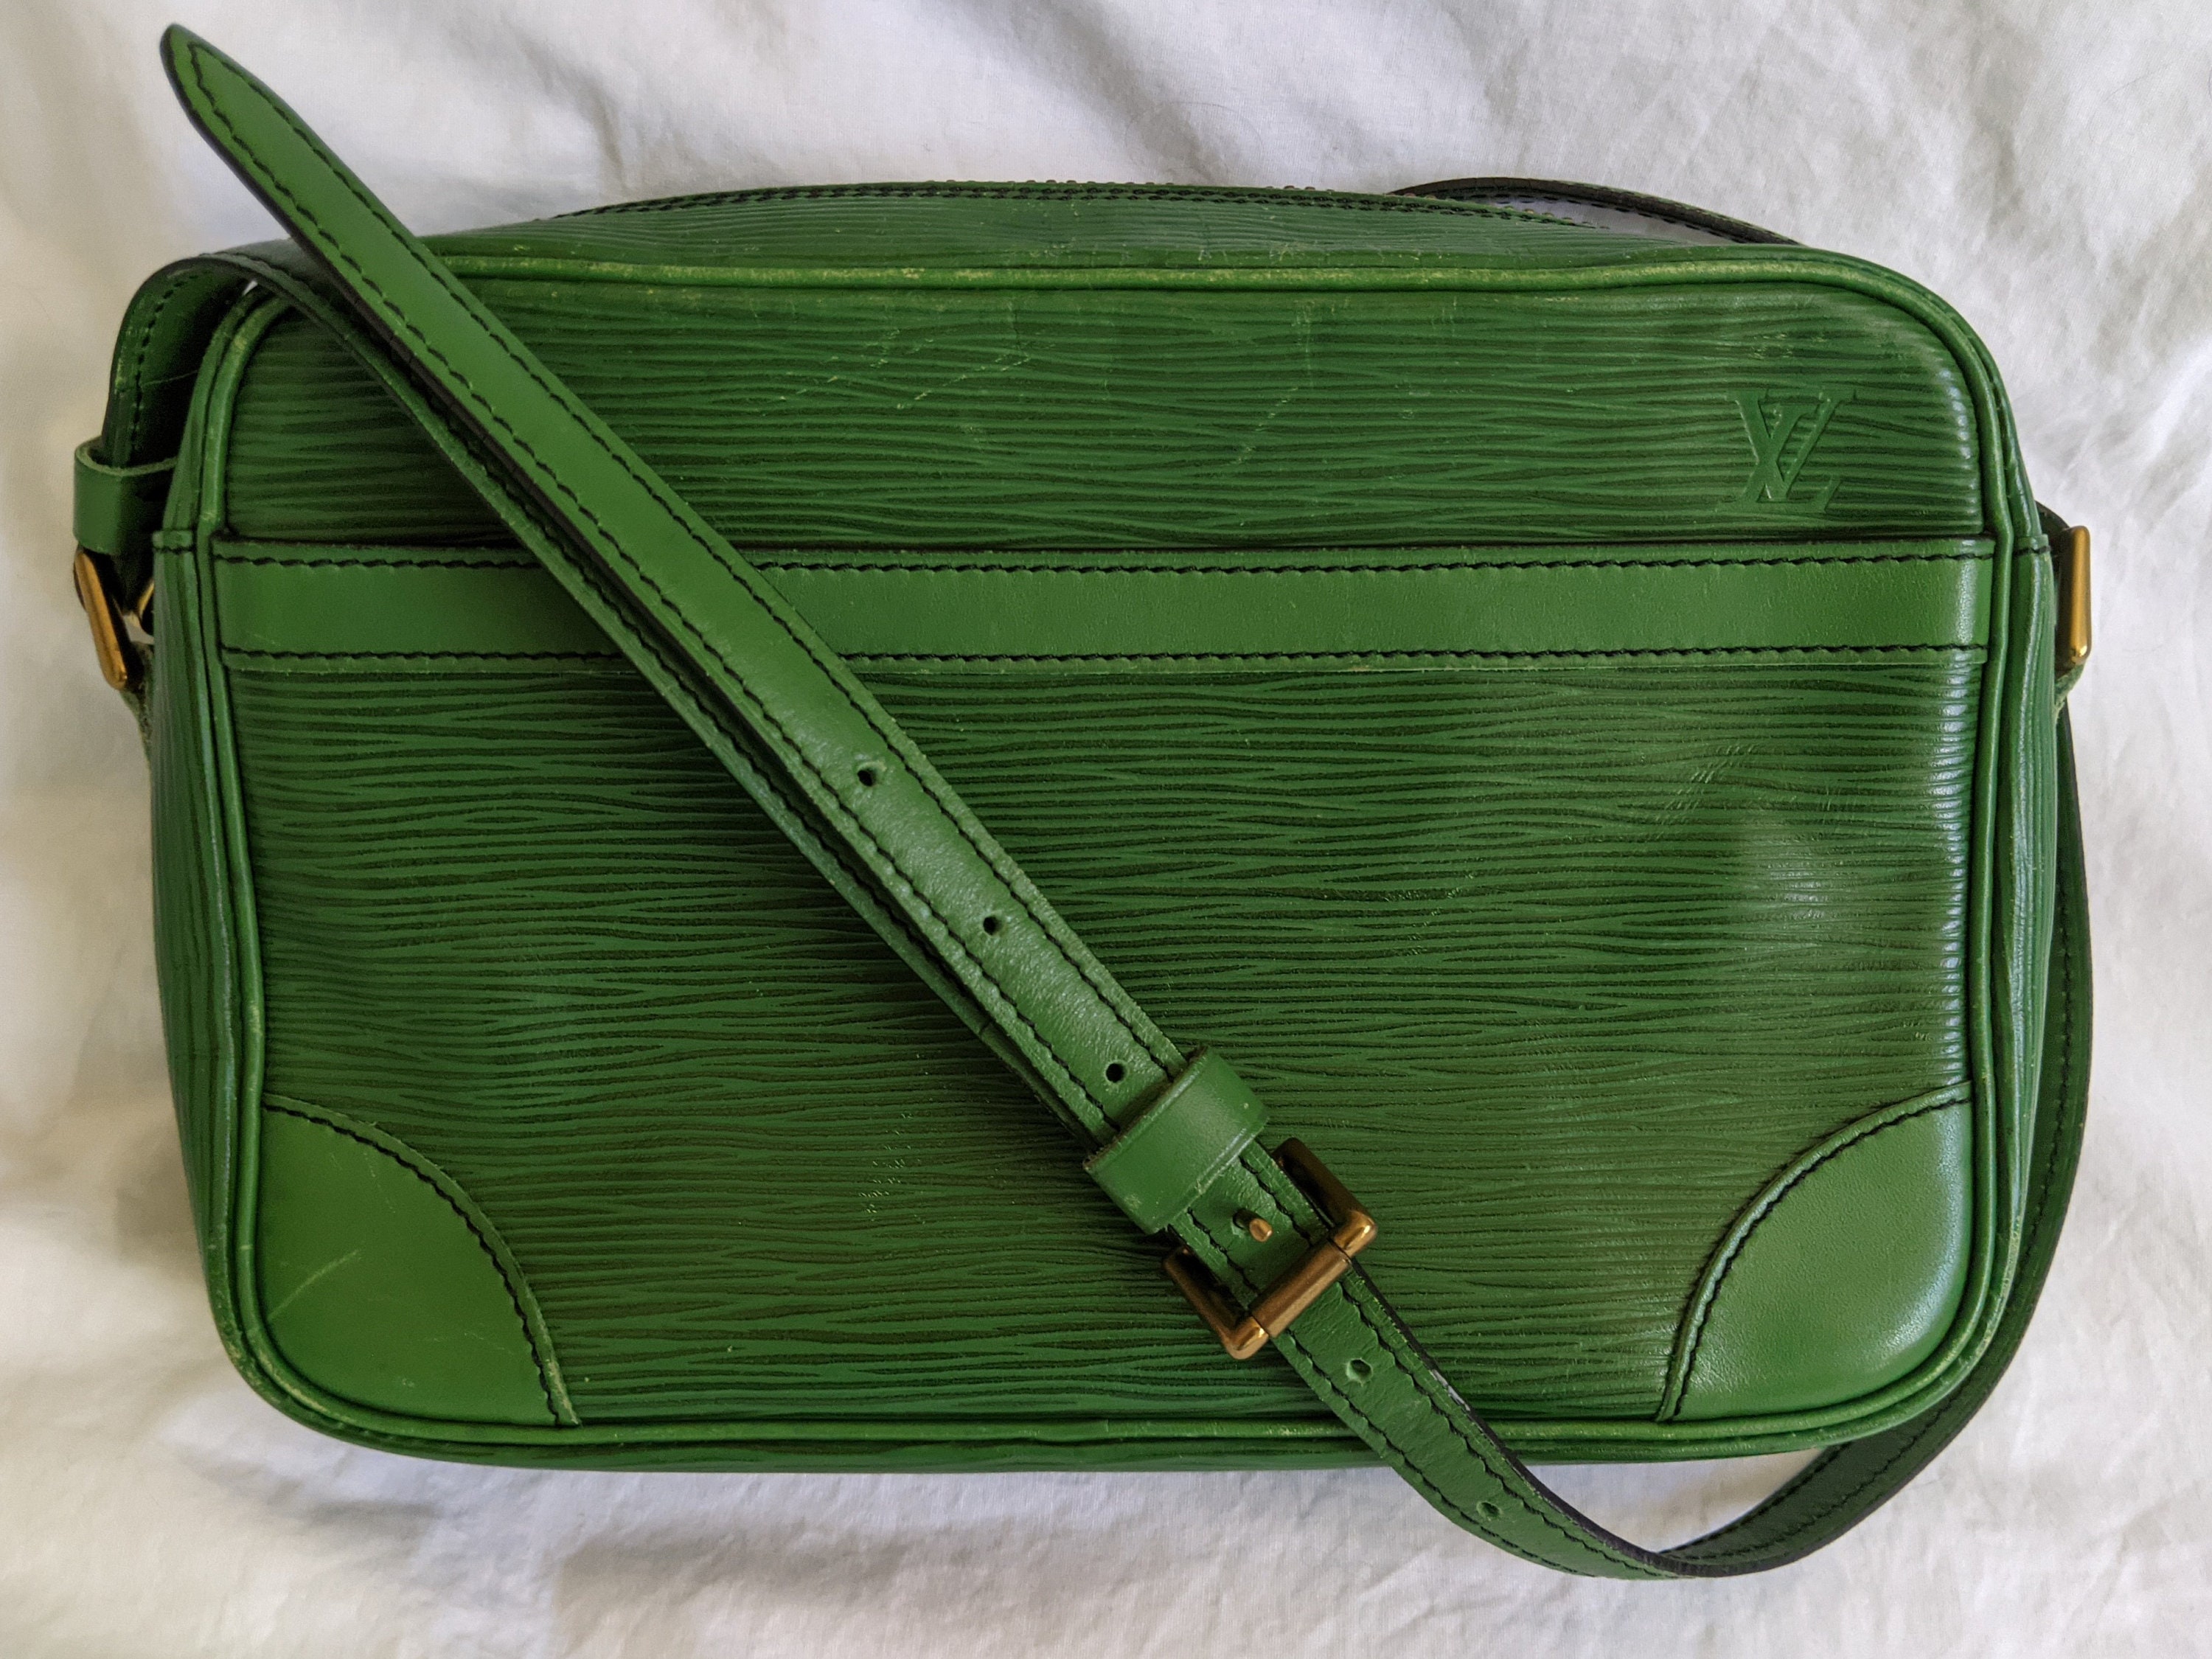 Buy Louis Vuitton Green Handbag Online In India -  India